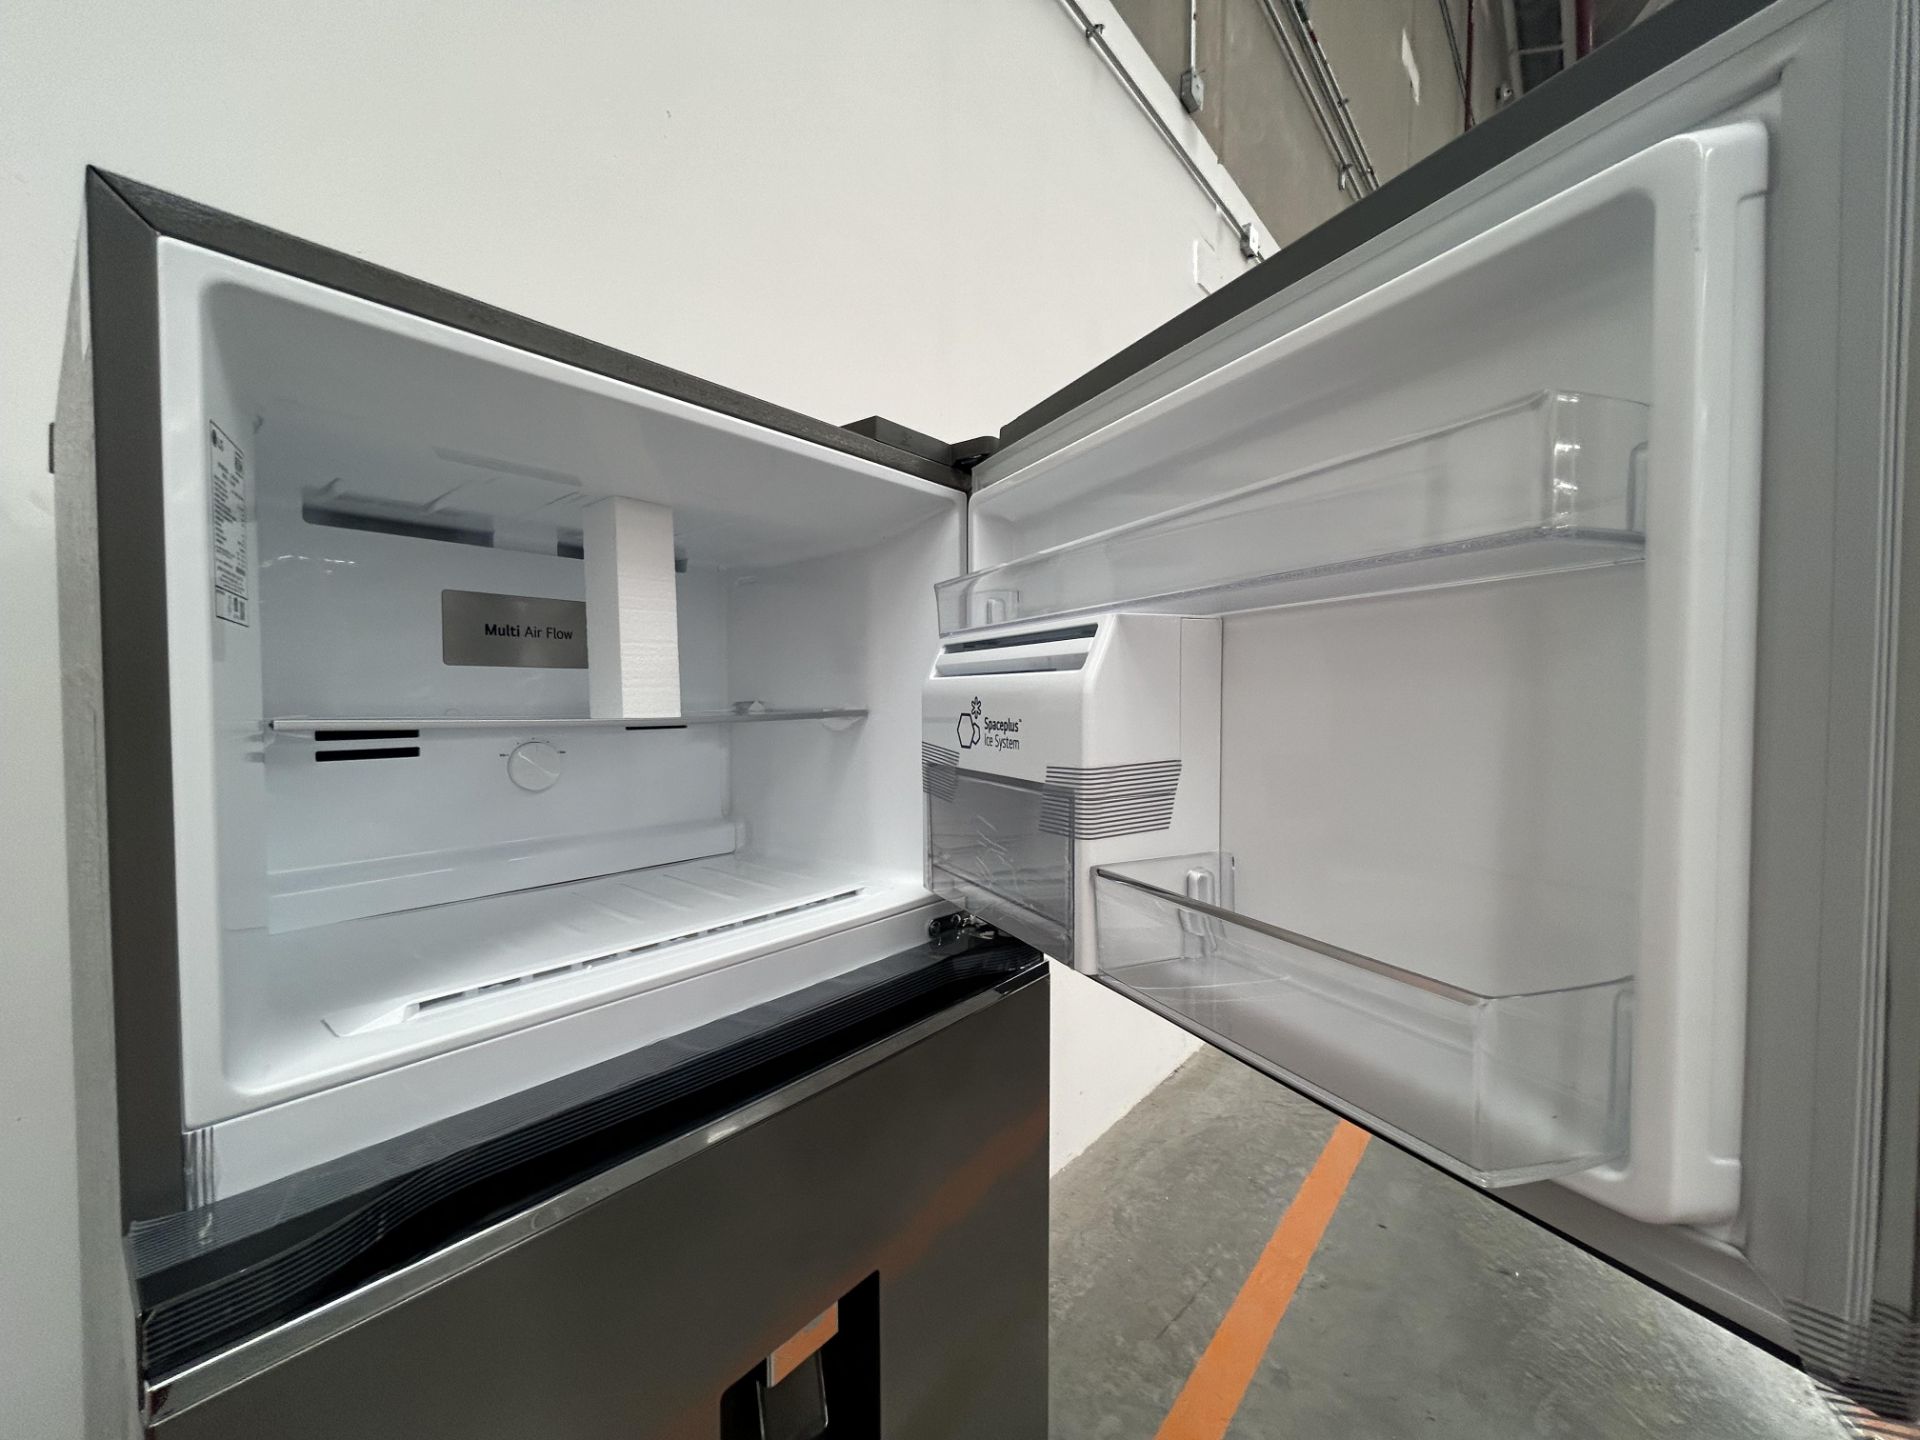 (NUEVO) Refrigerador con dispensador de agua Marca LG, Modelo VT40AWP, Serie L1S381, Color GRIS - Image 5 of 5